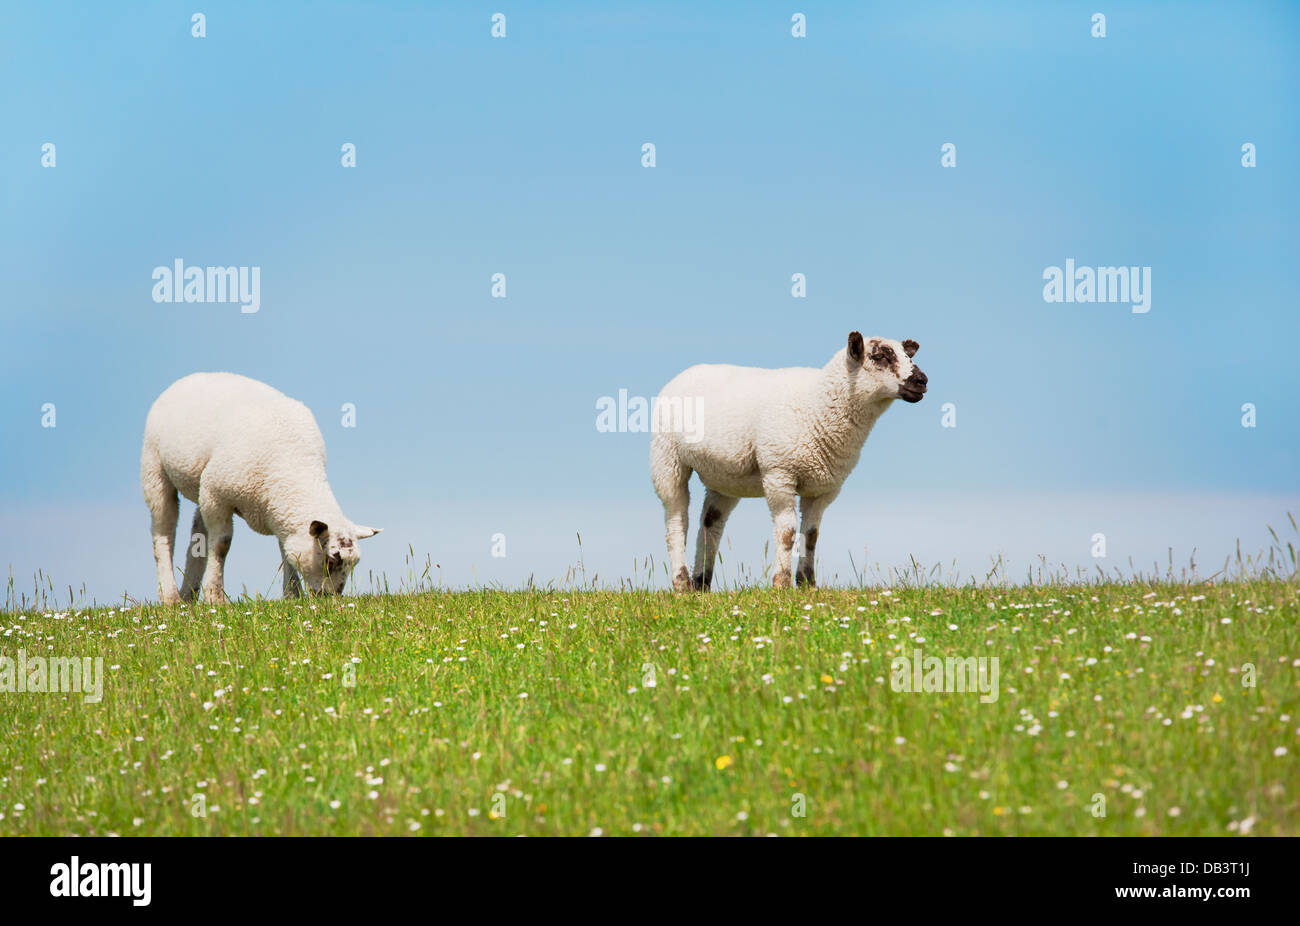 zwei Schafe stehen auf dem Deich, auf Hintergrund blauer Himmel Stockfoto